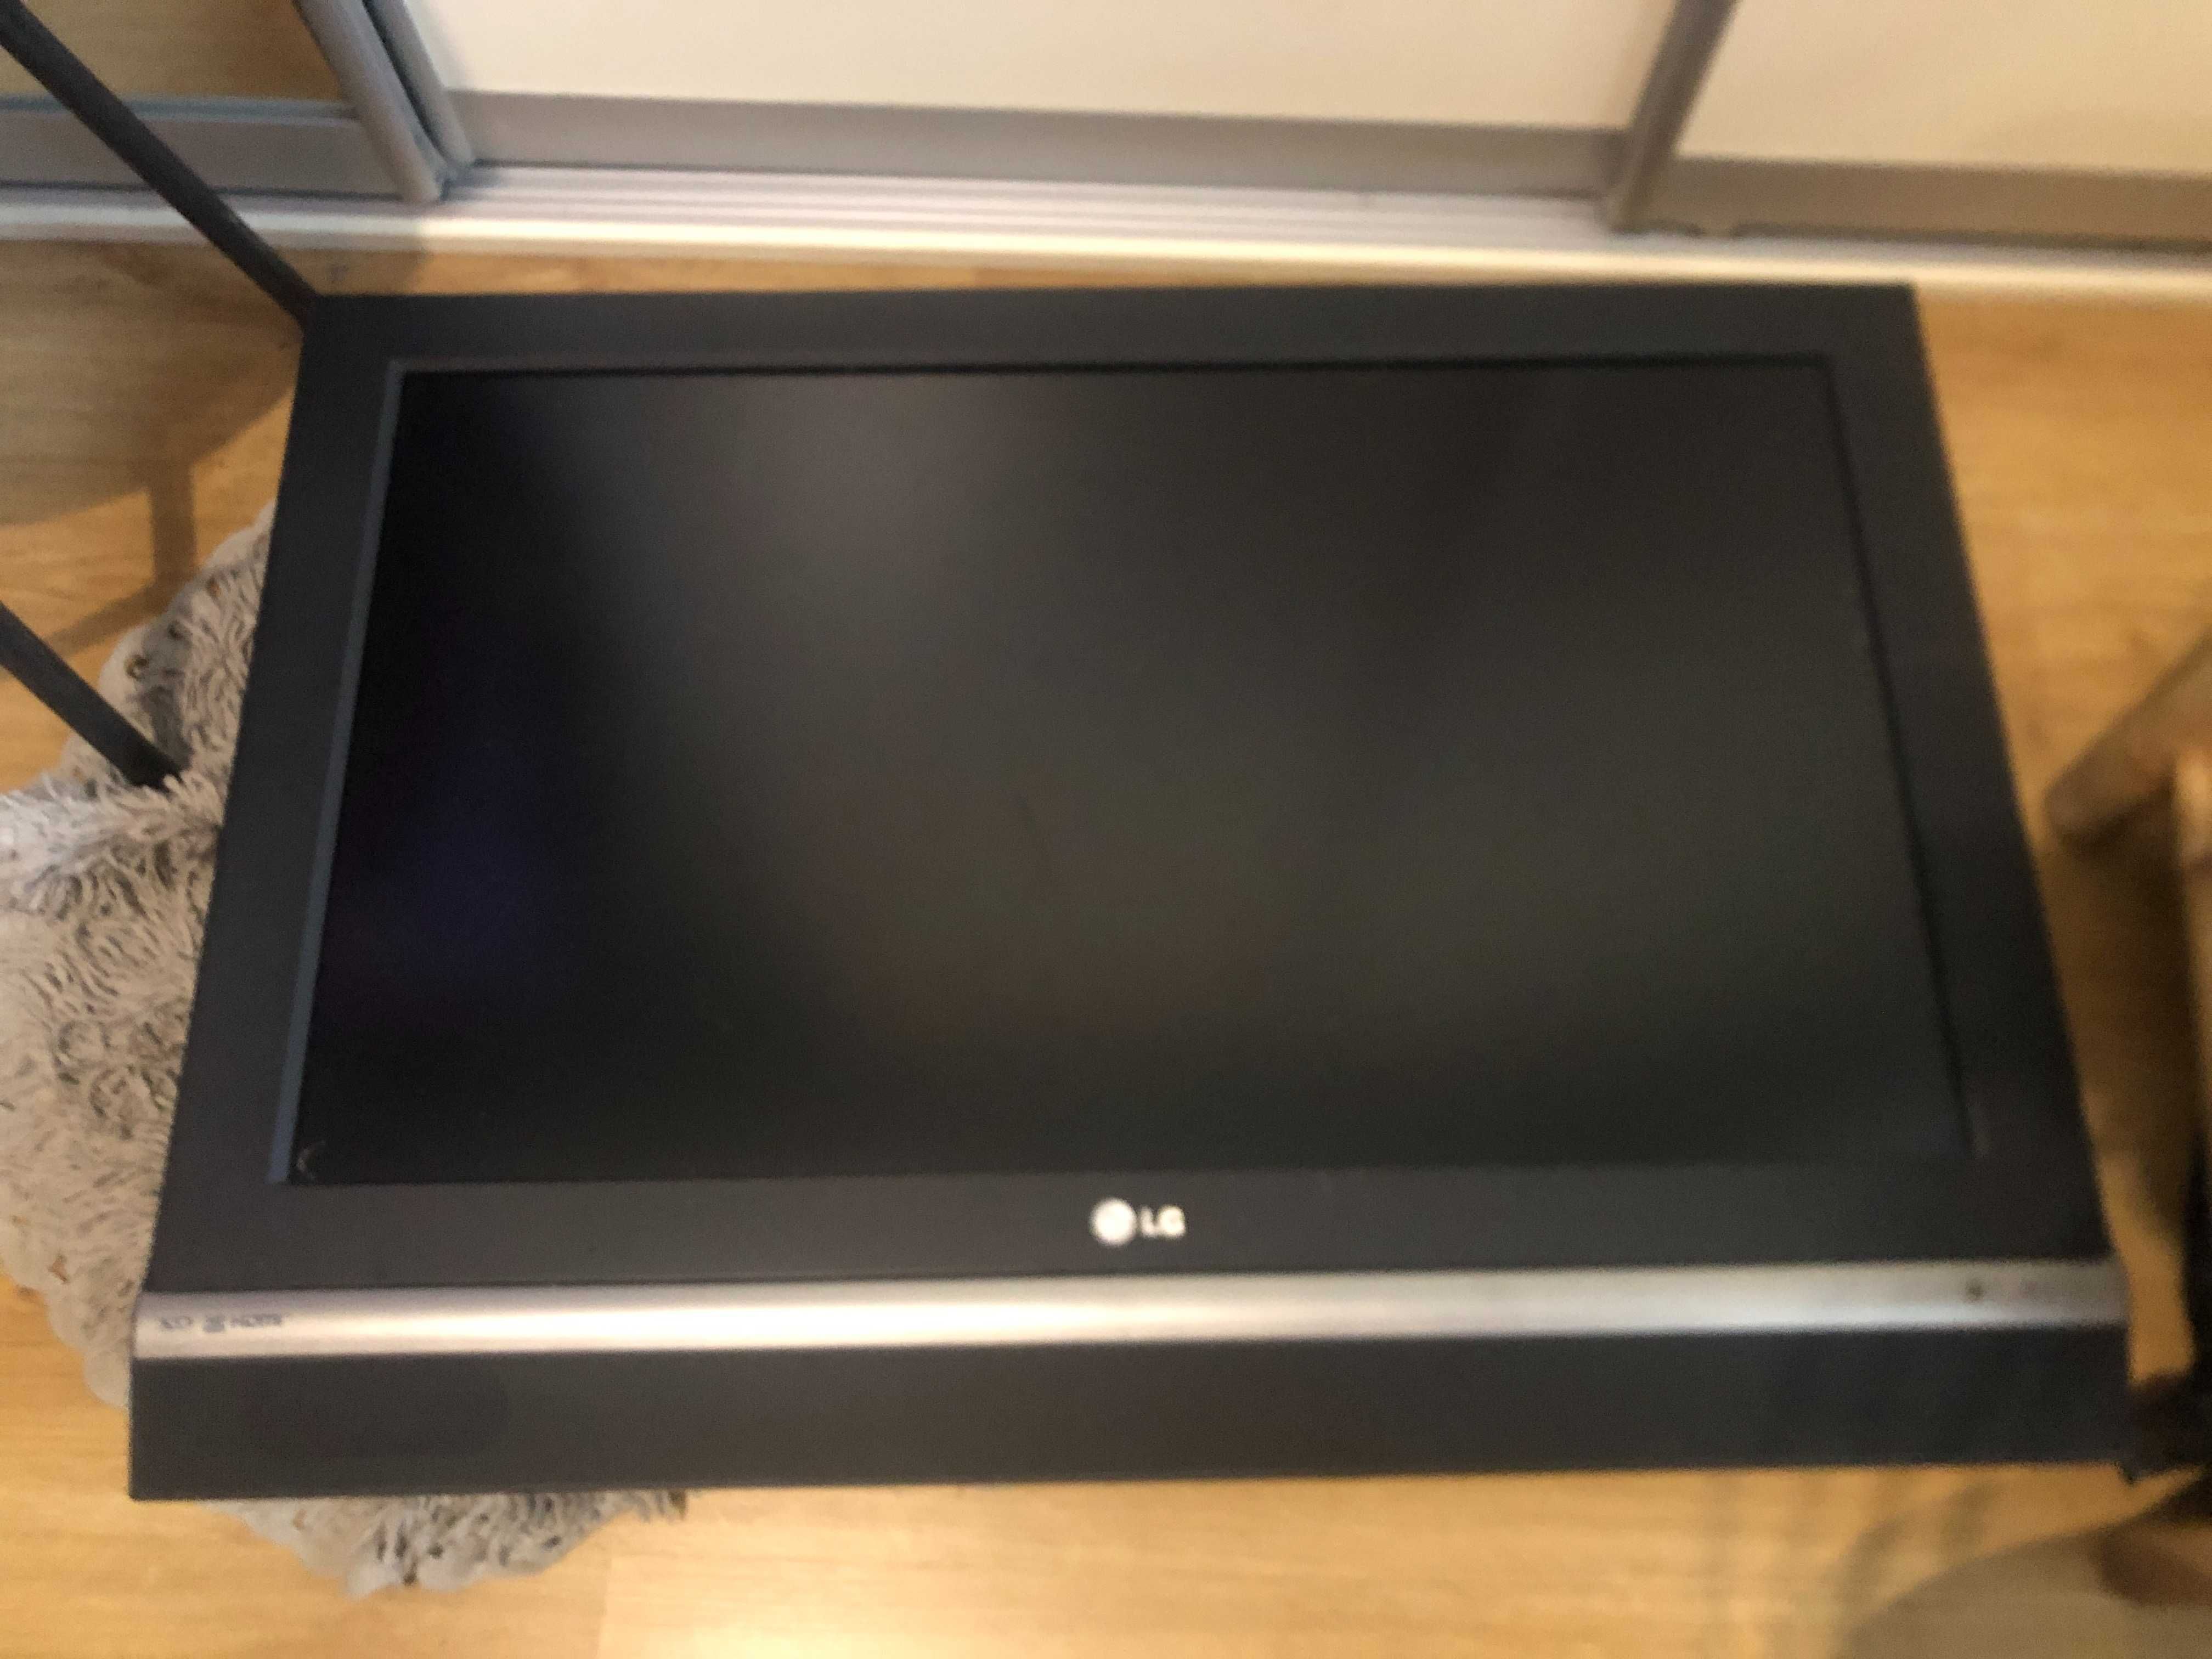 Telewizor LCD LG Electronics 32 cale 32LC25R sprawny duży ciężki